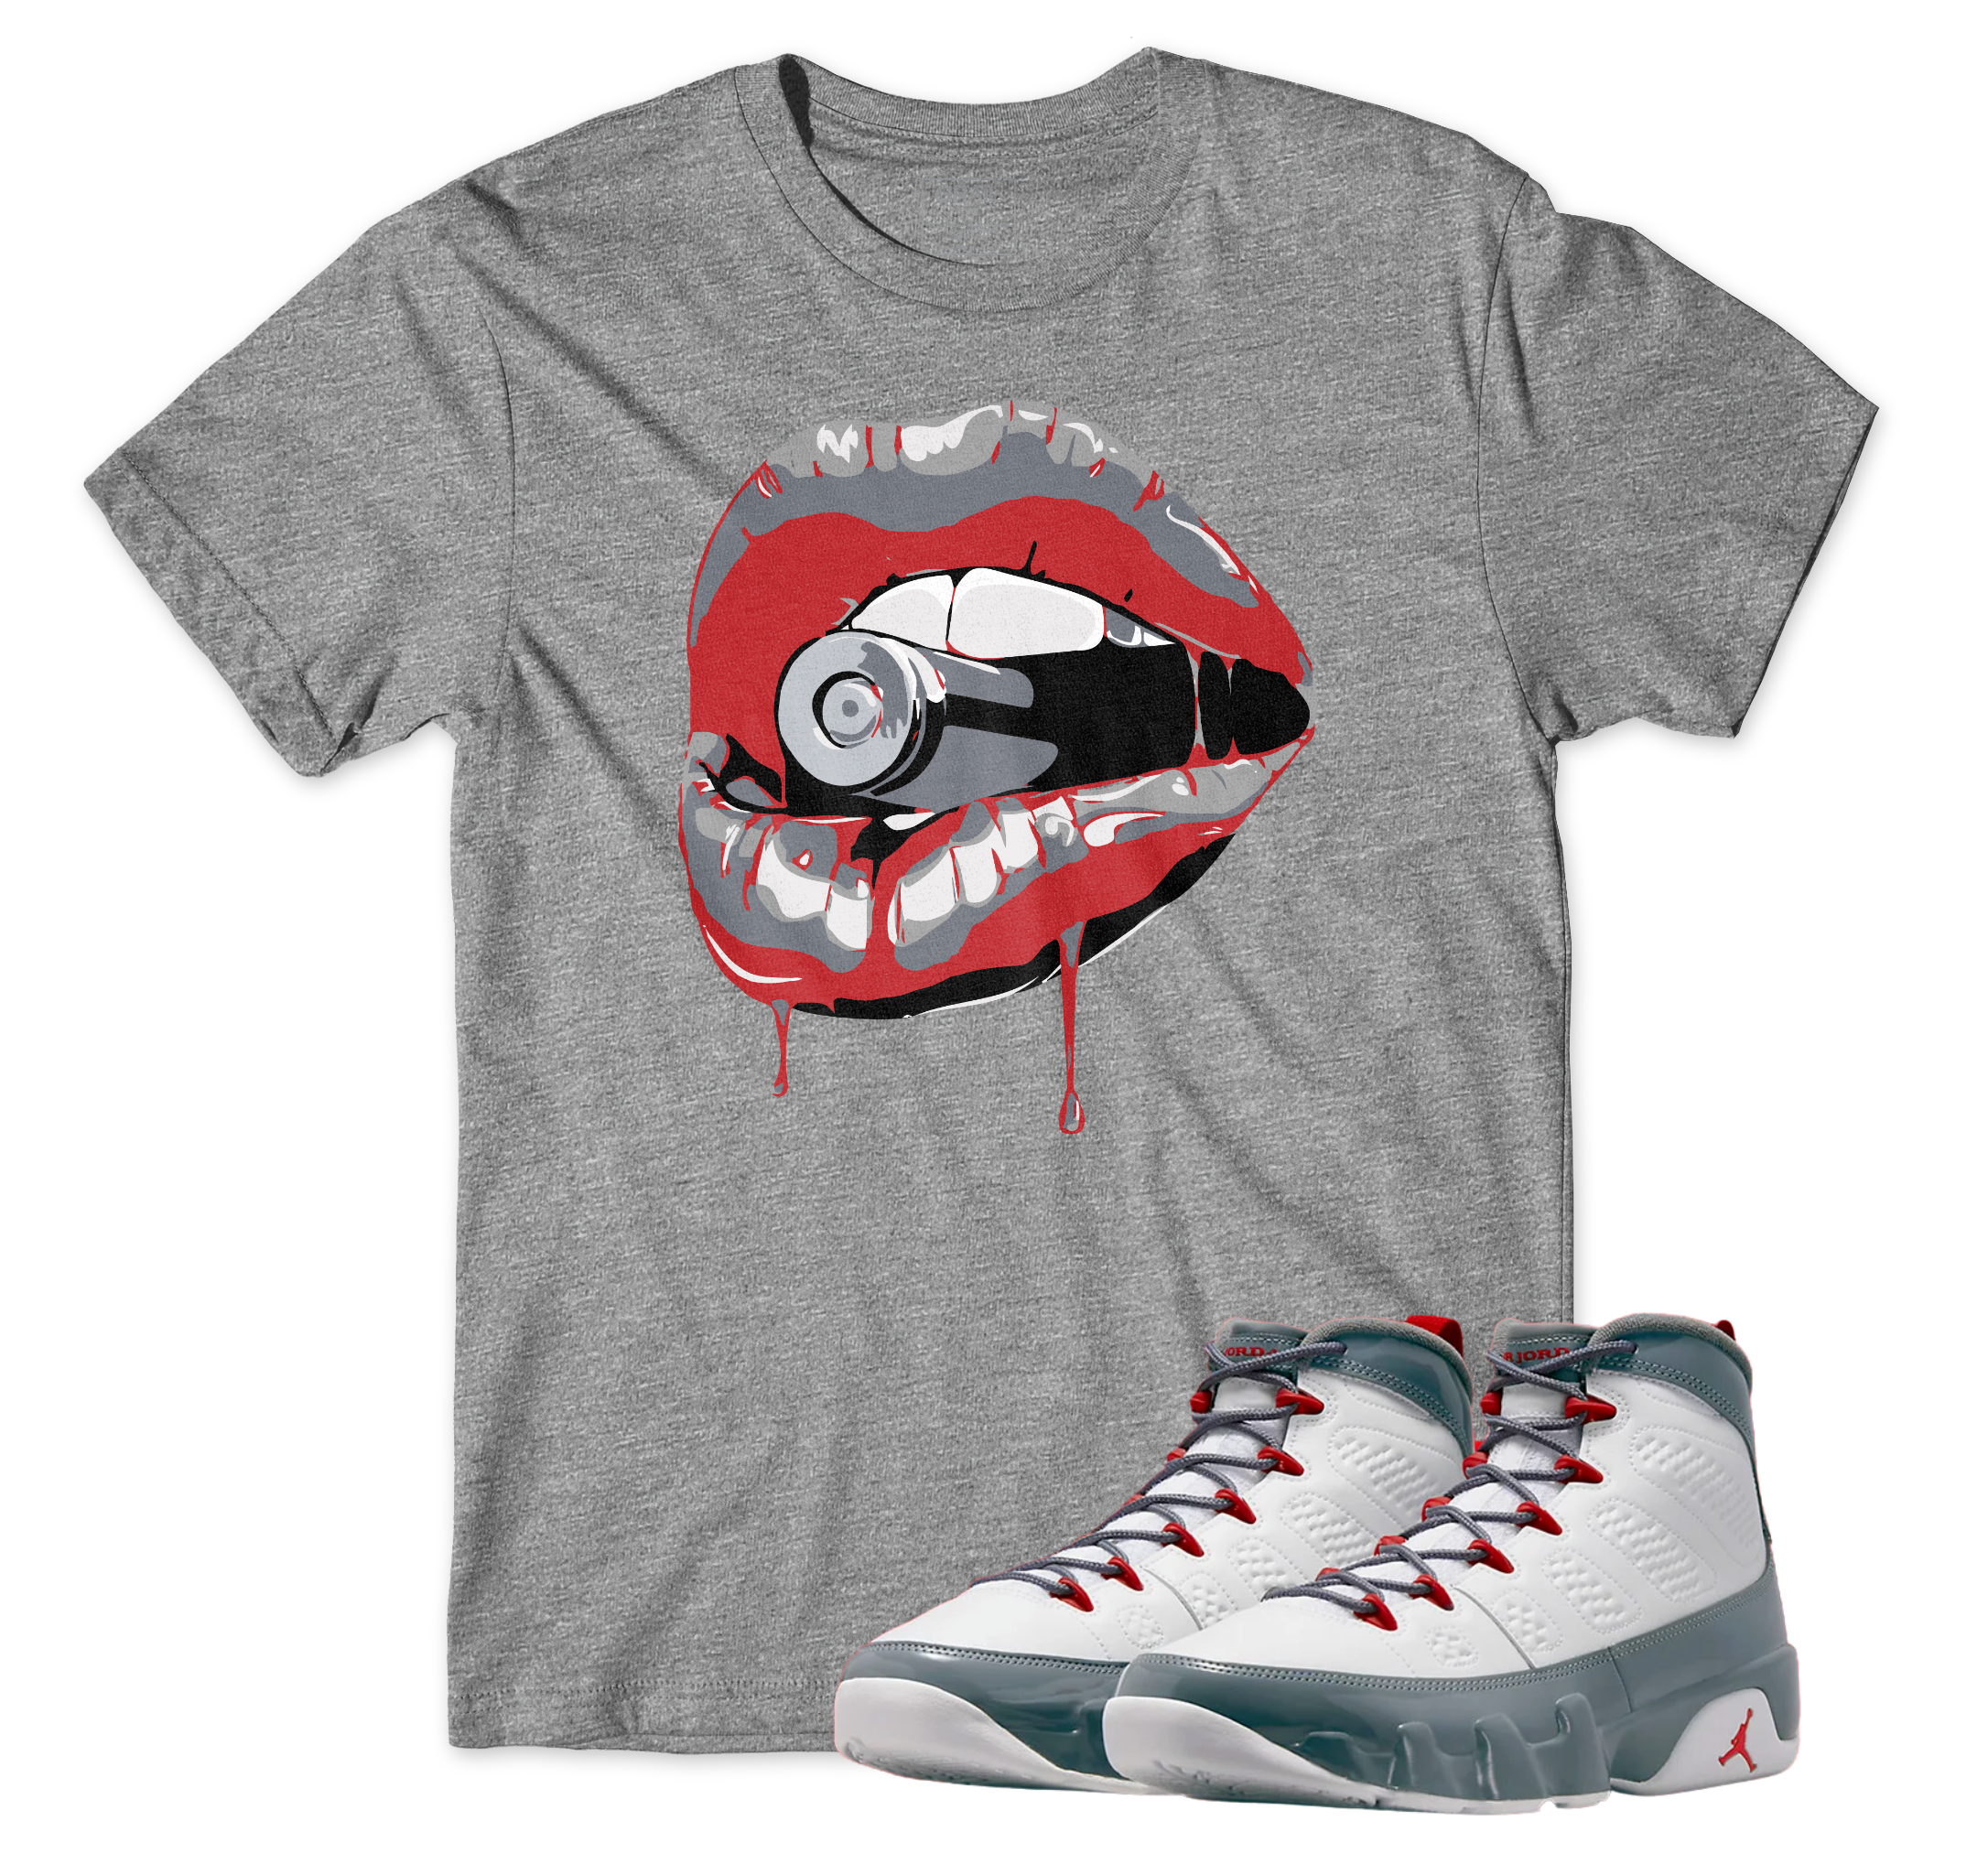 Air Jordan 9 Fire Red I Drip Lips T-Shirt | Air Jordan 9 Fire Red | Sneaker Match | Jordan Matching Outfits